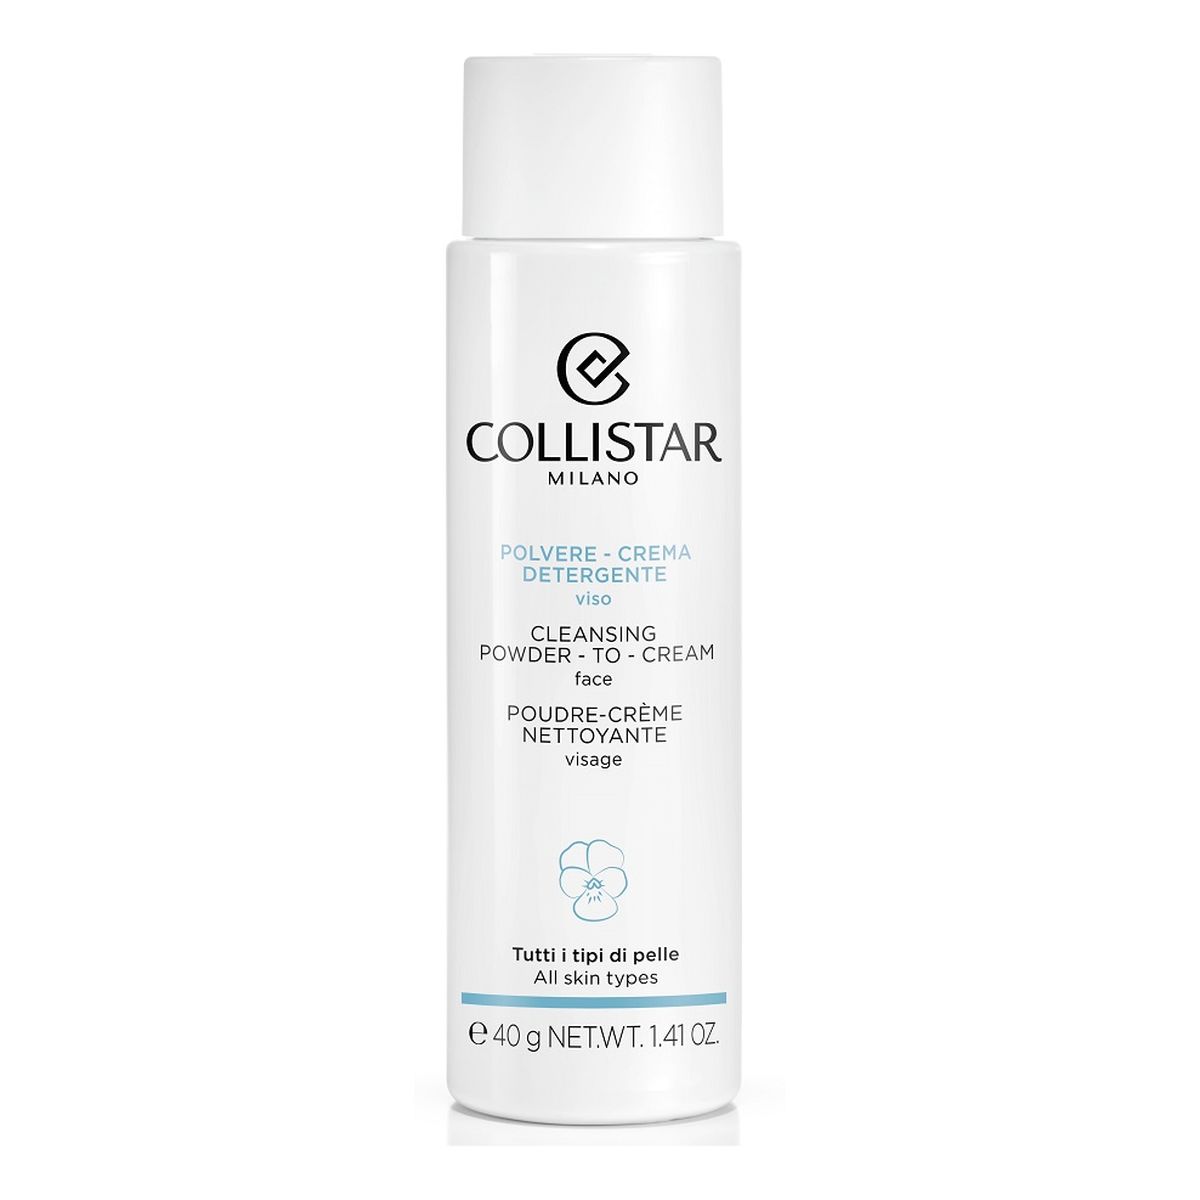 Collistar Cleansing Powder-To-Cream Kremowy puder oczyszczający do twarzy 40g